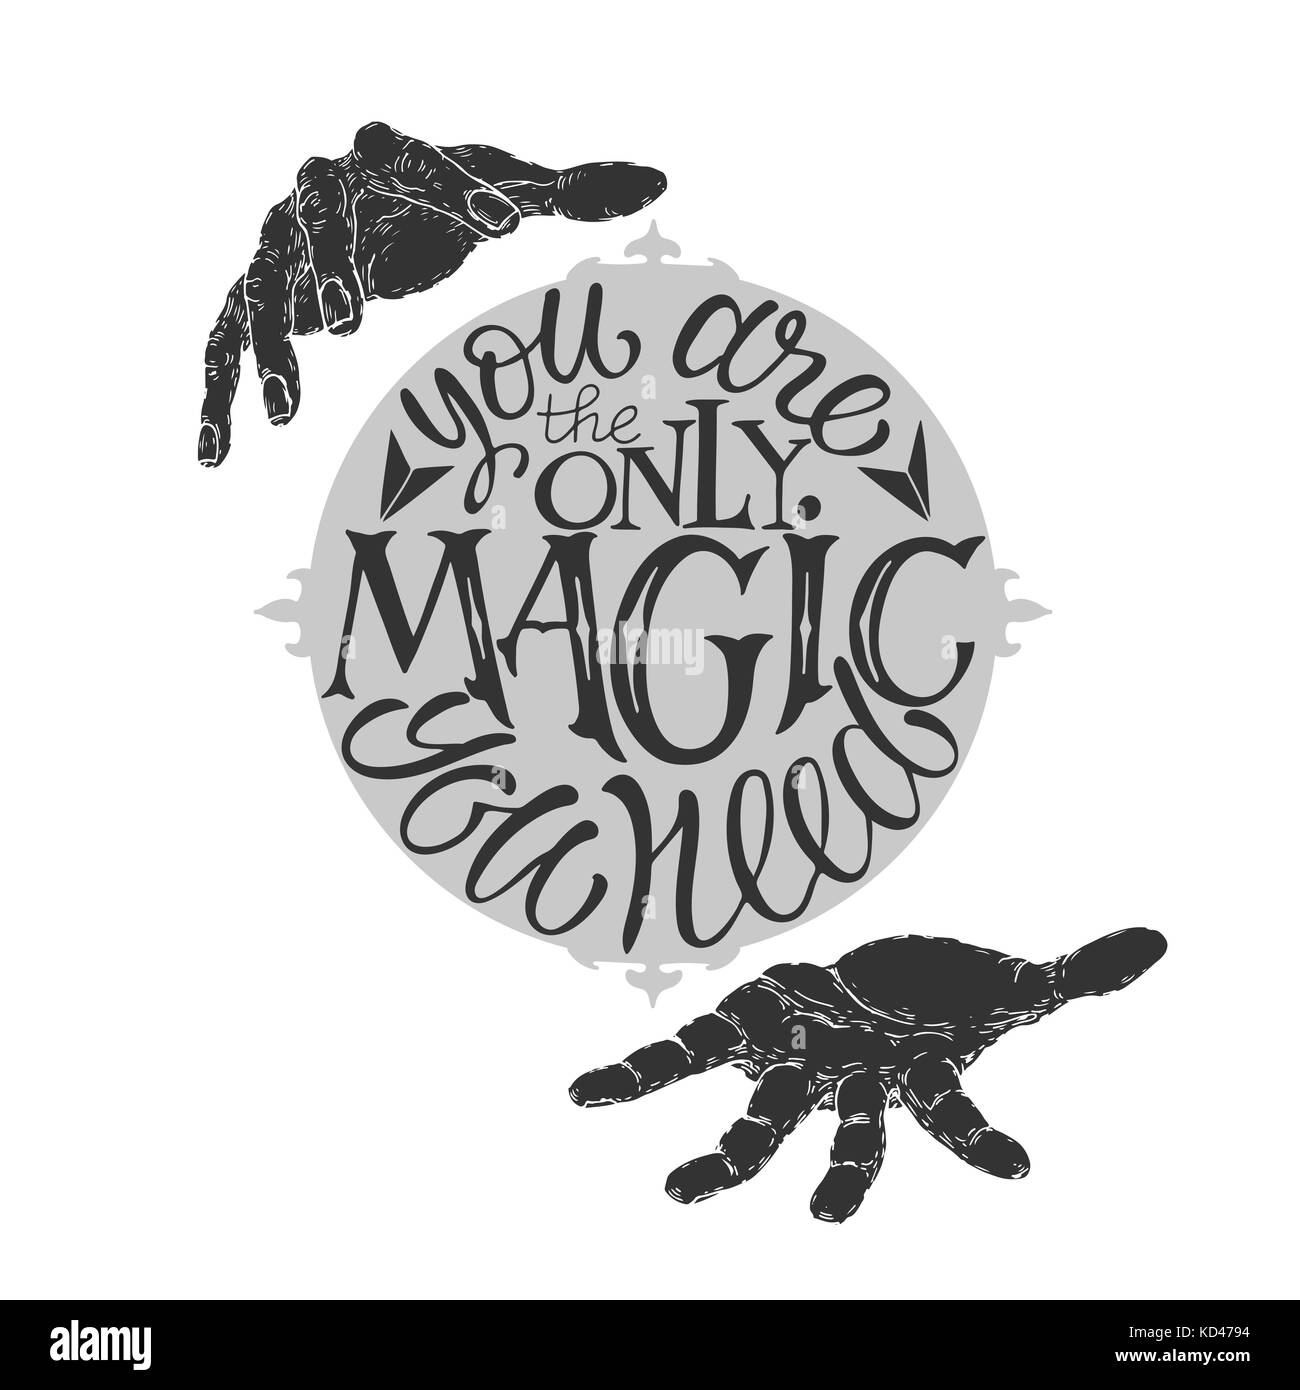 Spazzola ispirazione lettering preventivo con mago le mani dicendo che sono solo la magia di cui avete bisogno. Illustrazione Vettoriale